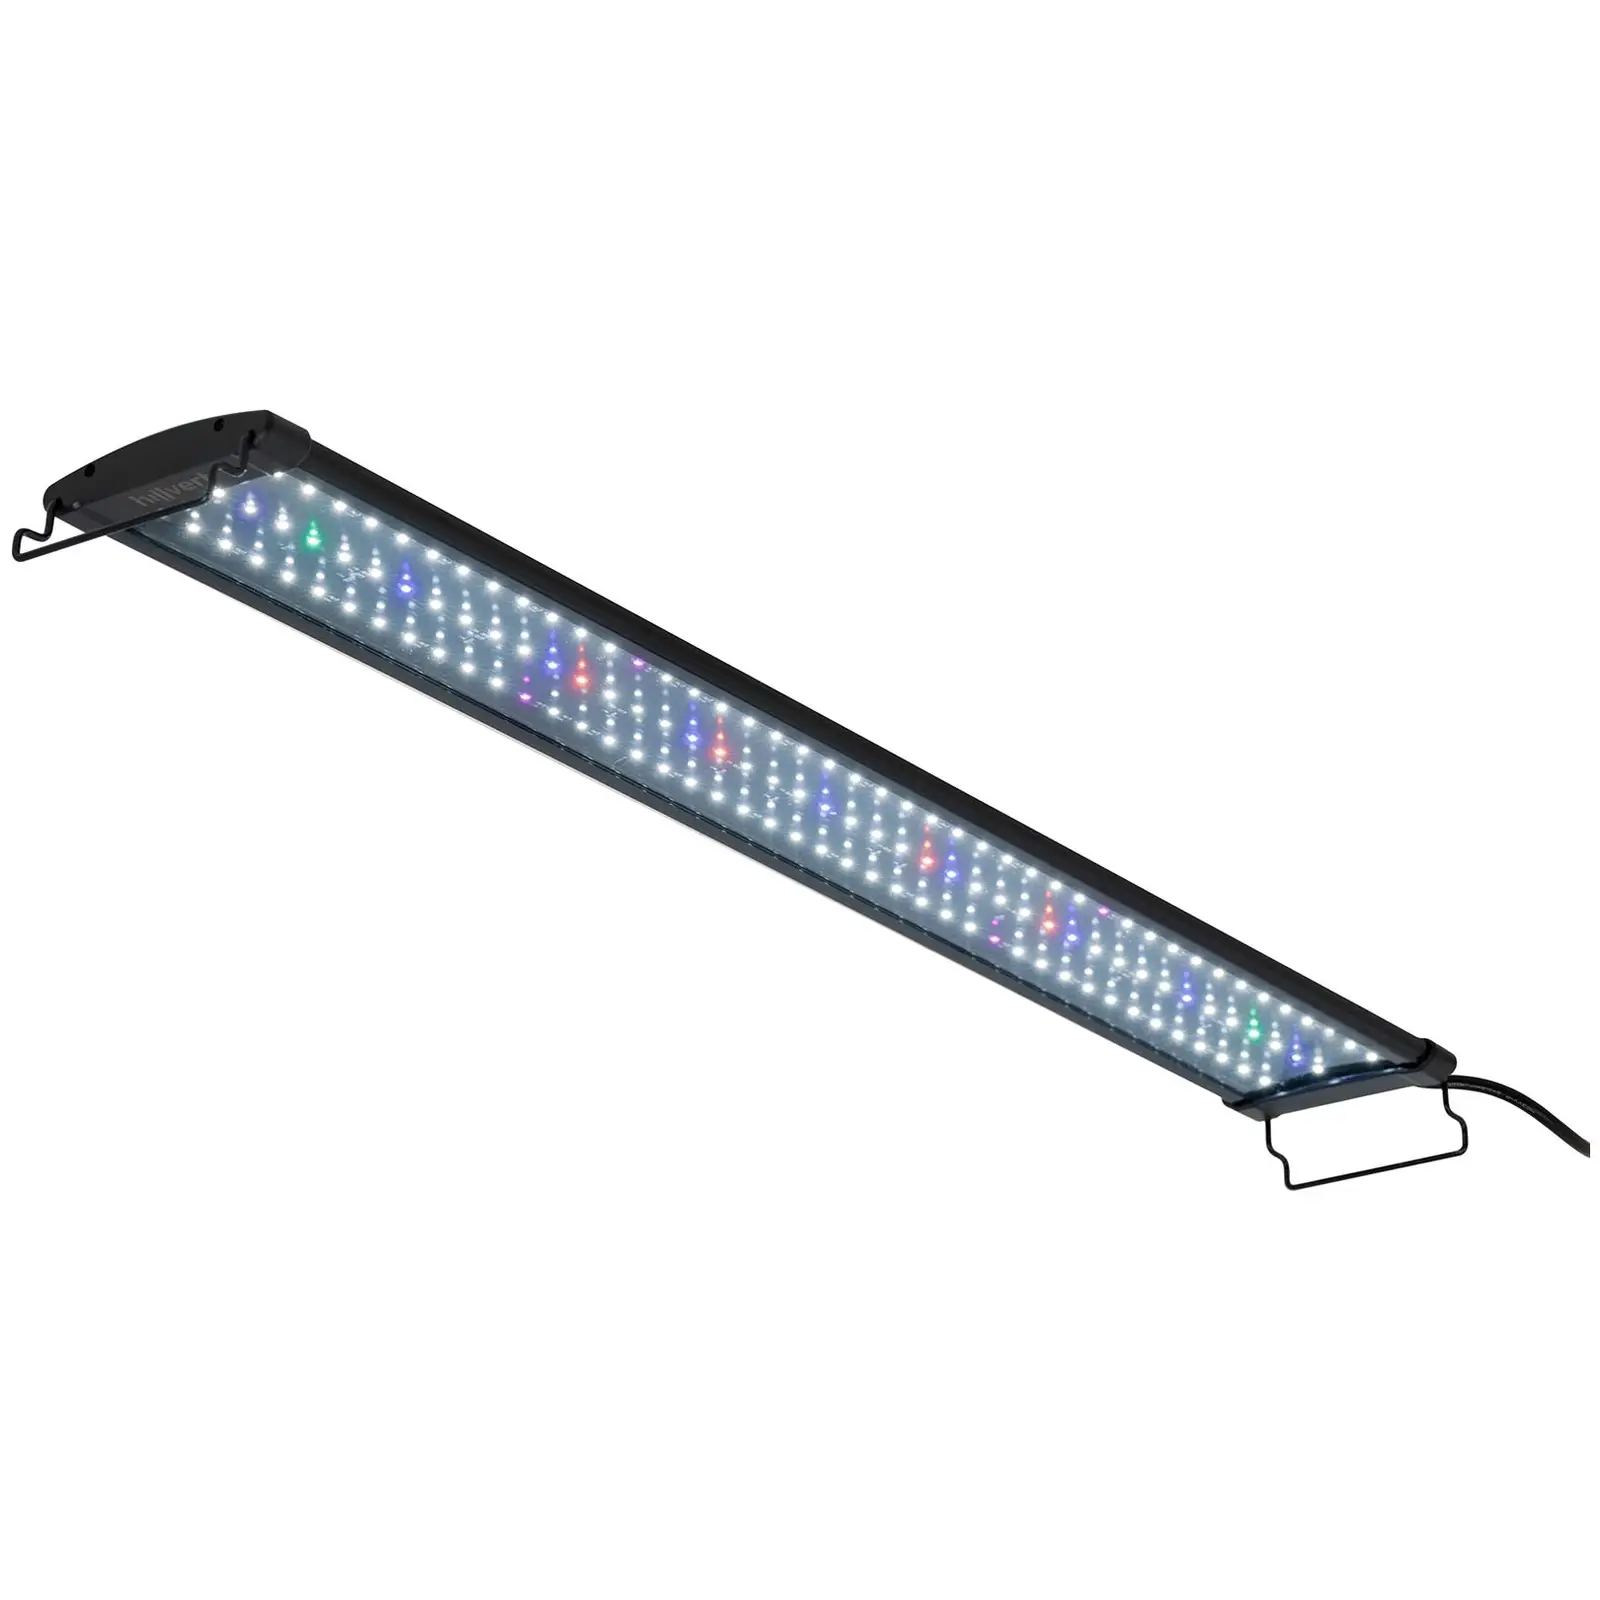 Lâmpada LED para aquário - 129 díodos LED - 25 W - 90 cm